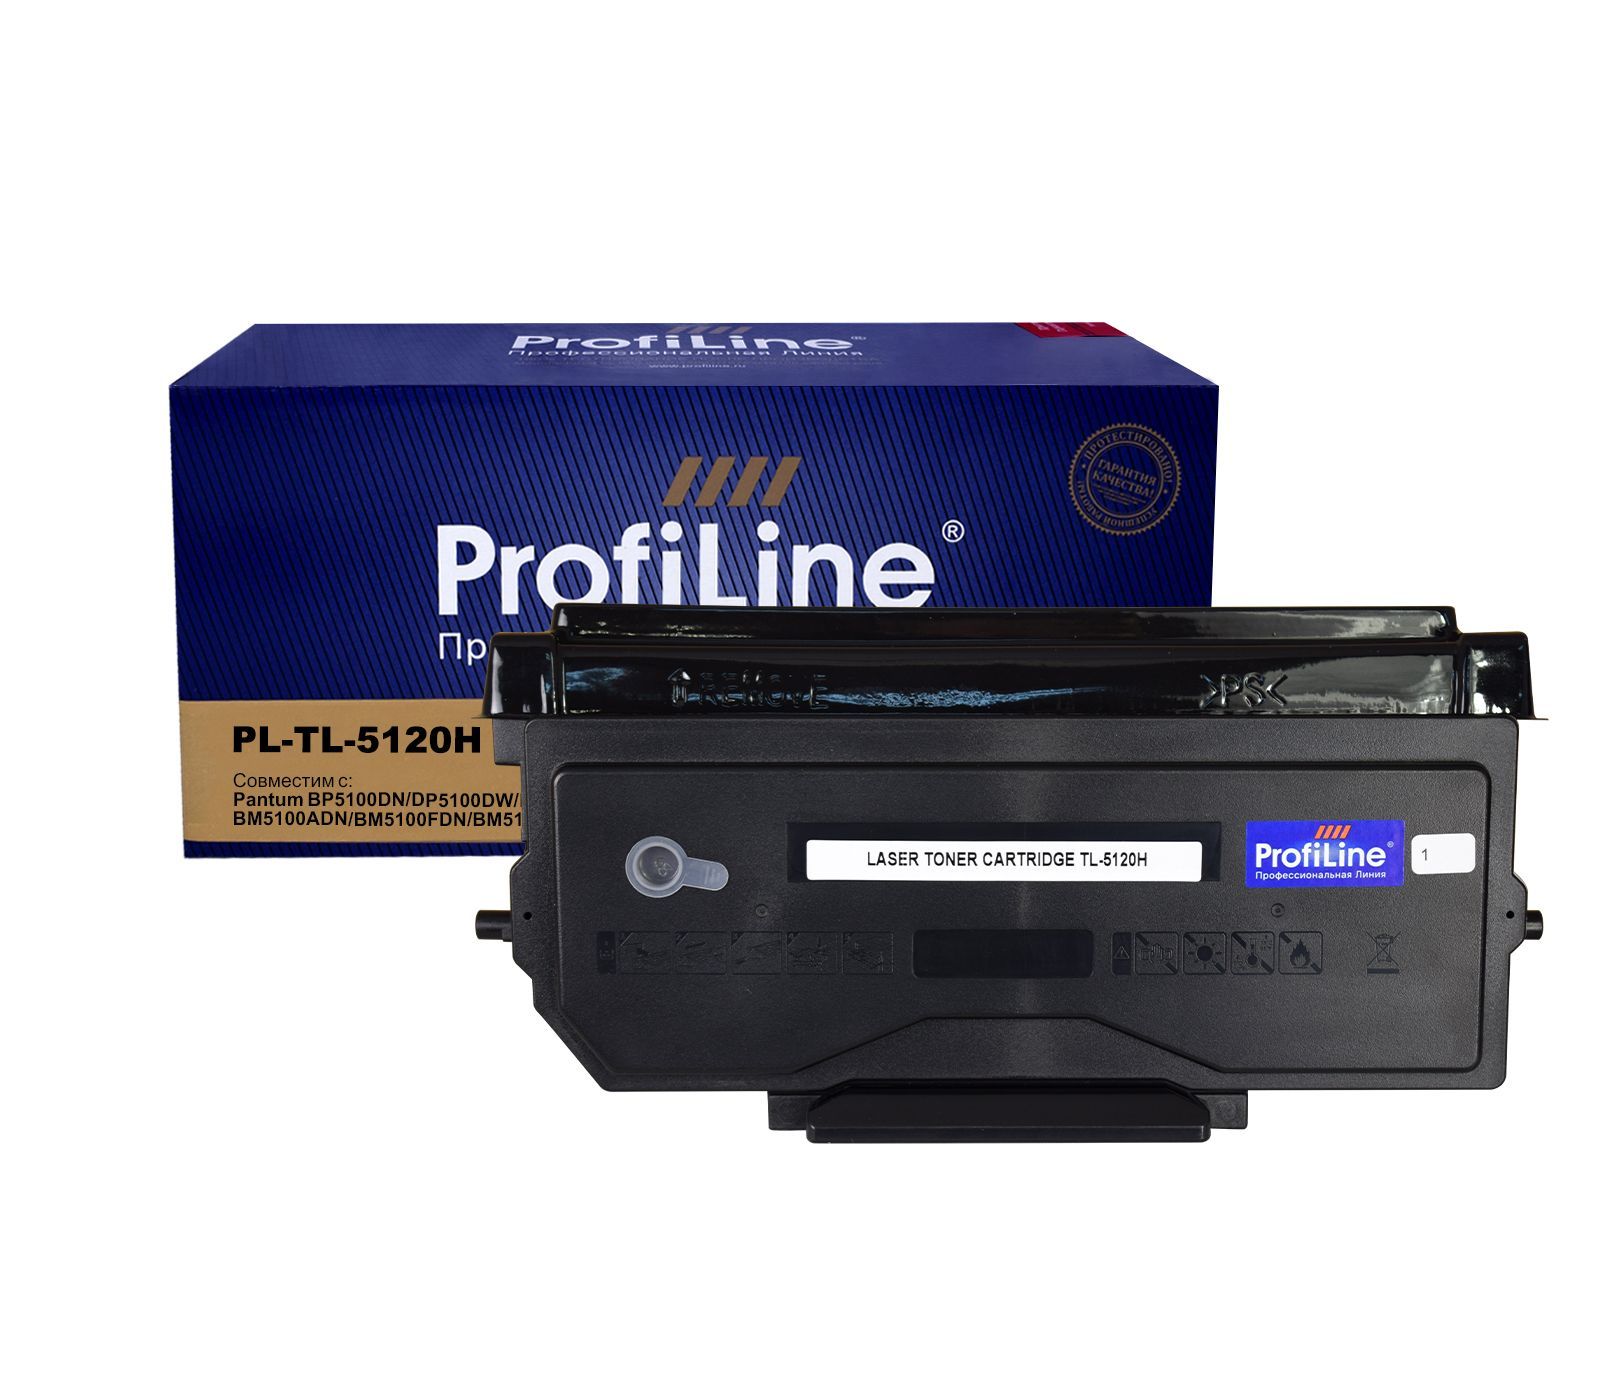 Картридж PL-TL-5120H для принтеров Pantum BP5100DN/DP5100DW/BM5100ADN/BM5100ADN/BM5100FDN/BM5100FDW 6000 копий ProfiLine